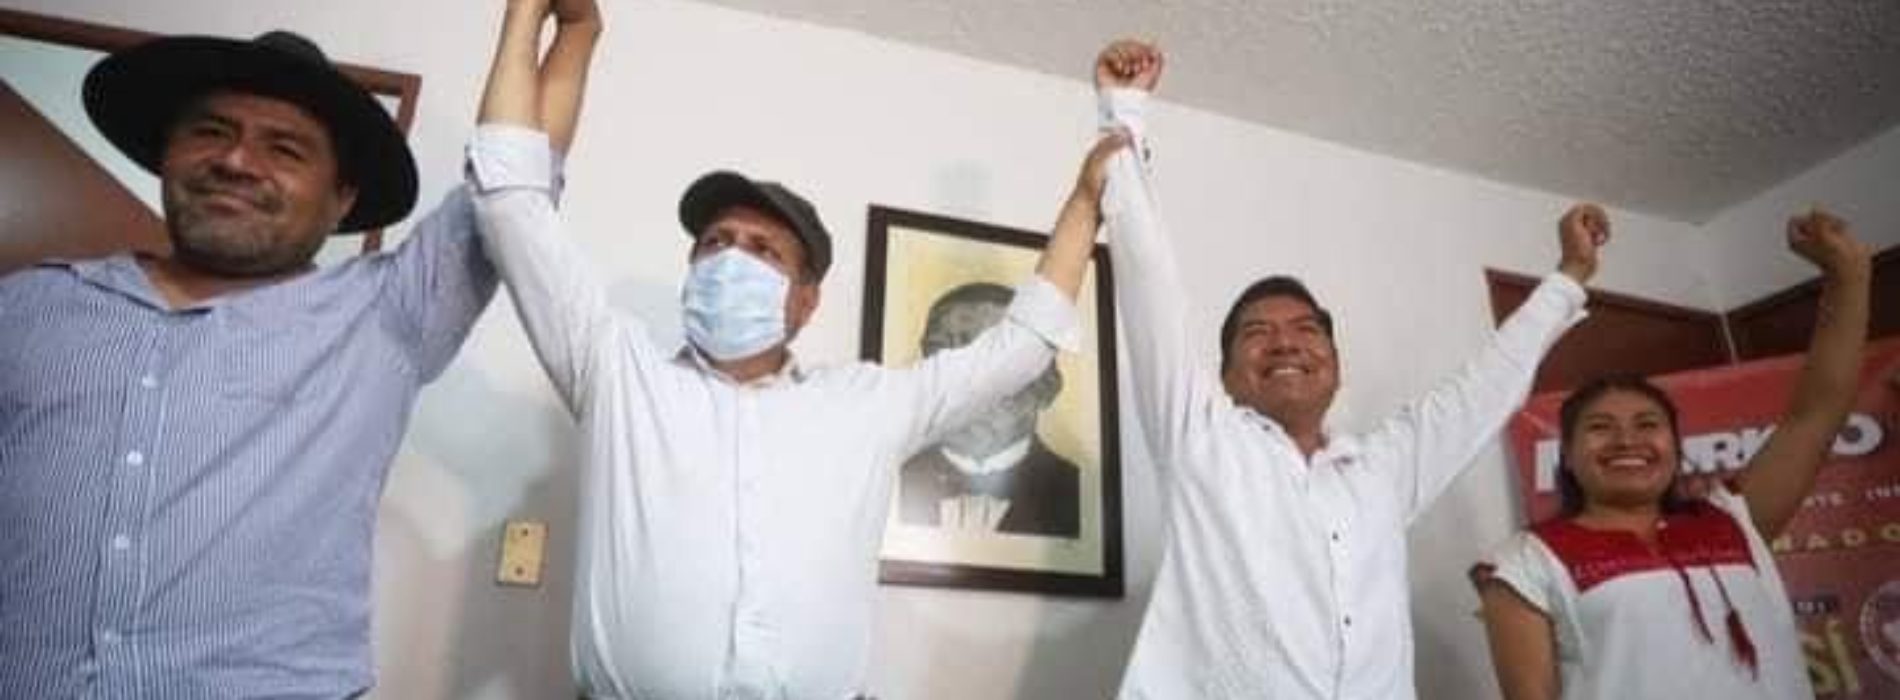 Mauricio Cruz Vargas, Candidato Independiente Indígena por la gubernatura de Oaxaca, llama a la concordia y solidaridad social.